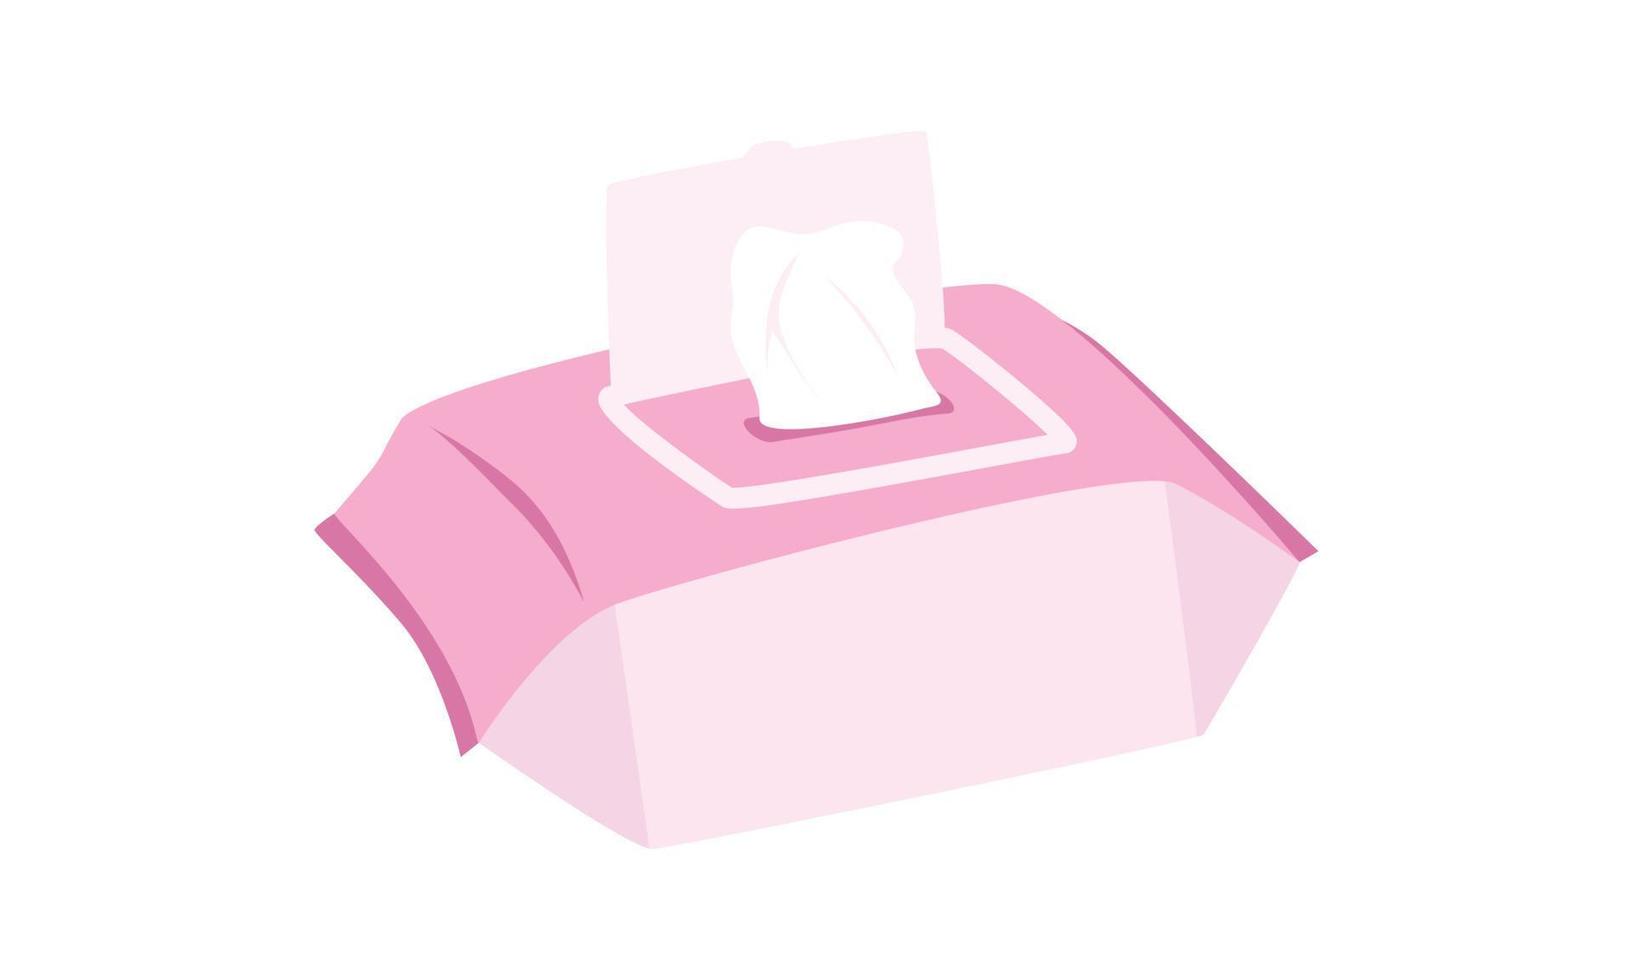 clipart de lenços umedecidos. simples e fofo bebê rosa toalhitas ilustração vetorial plana. lenços umedecidos em estilo cartoon de pacote plástico. crianças, chá de bebê, decoração de berçário. guardanapos antibacterianos, papel higiênico vetor